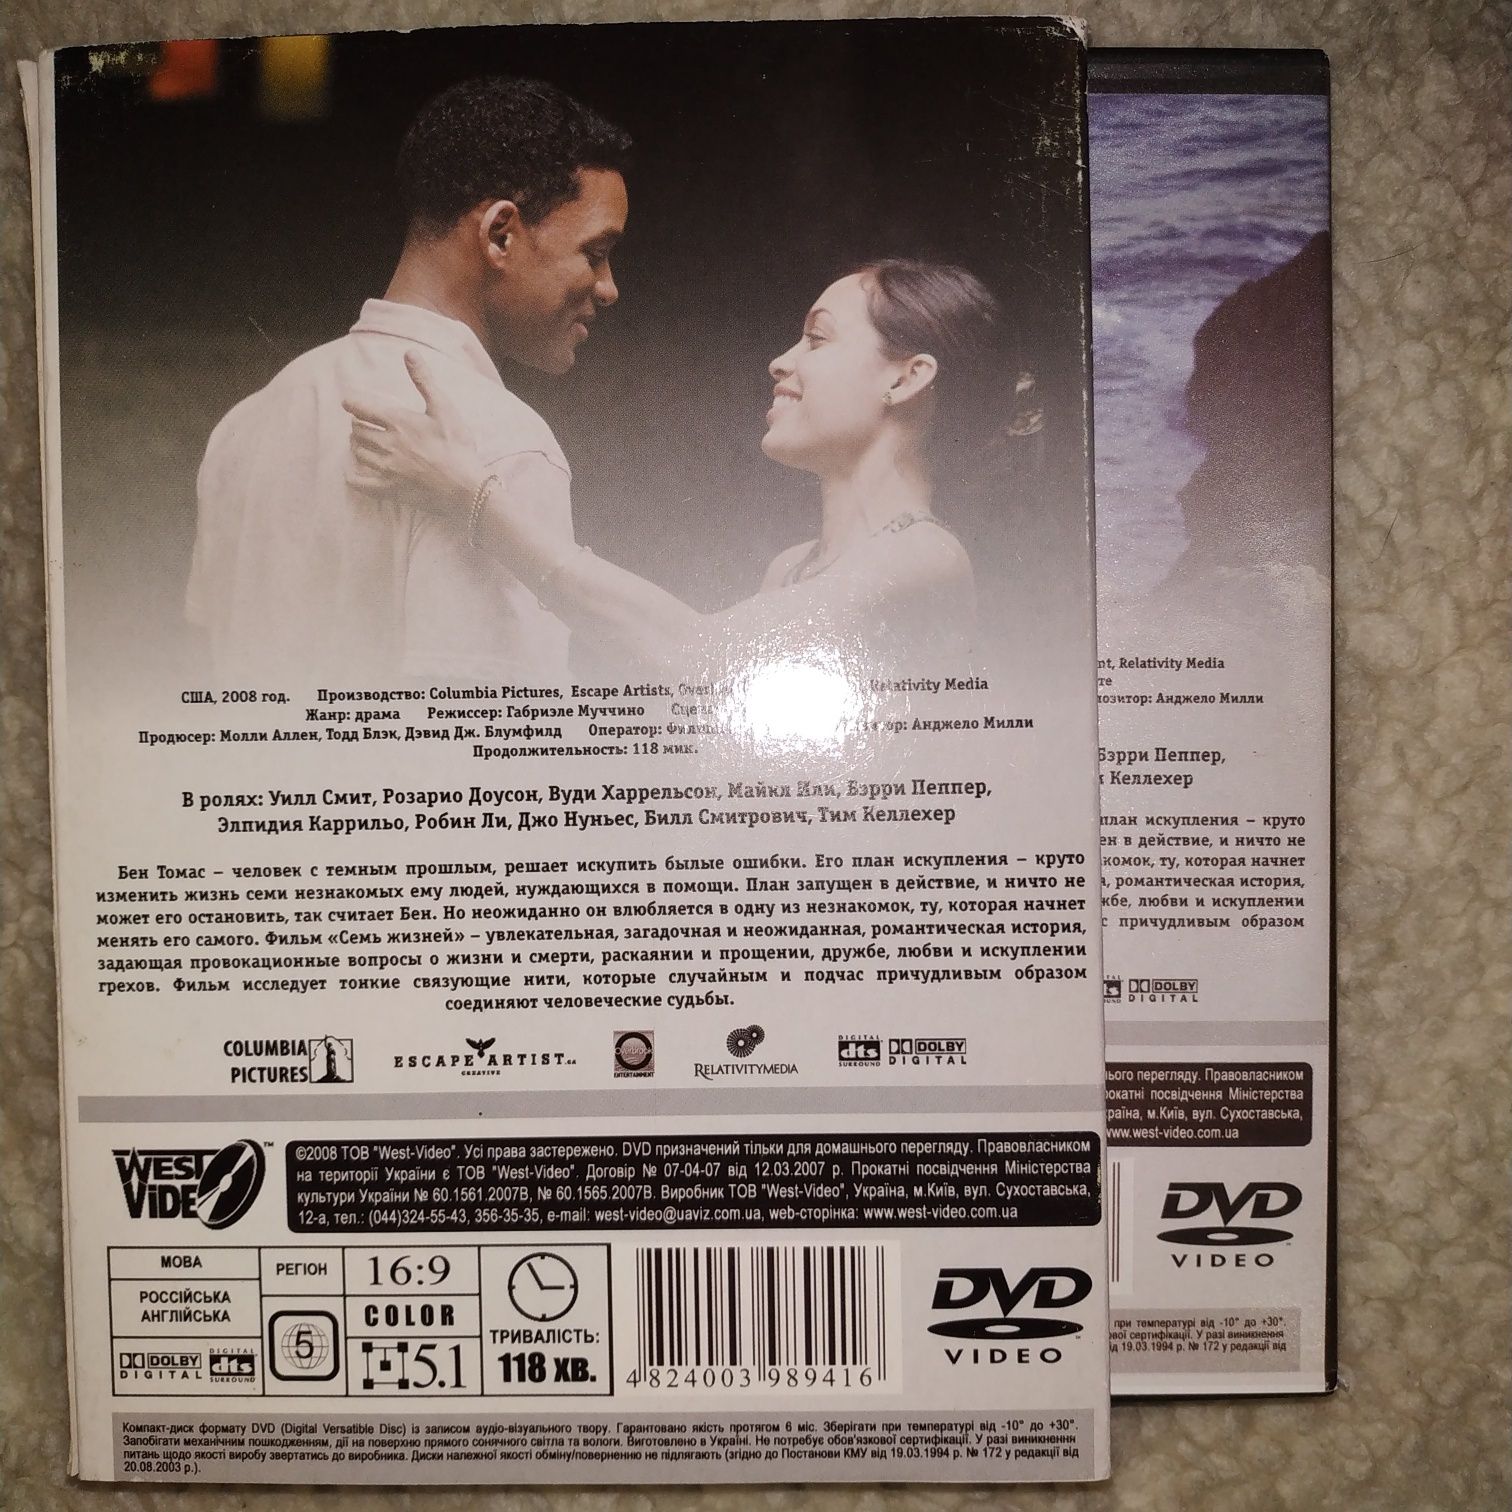 ДВД диск с фильмом Семь жизней